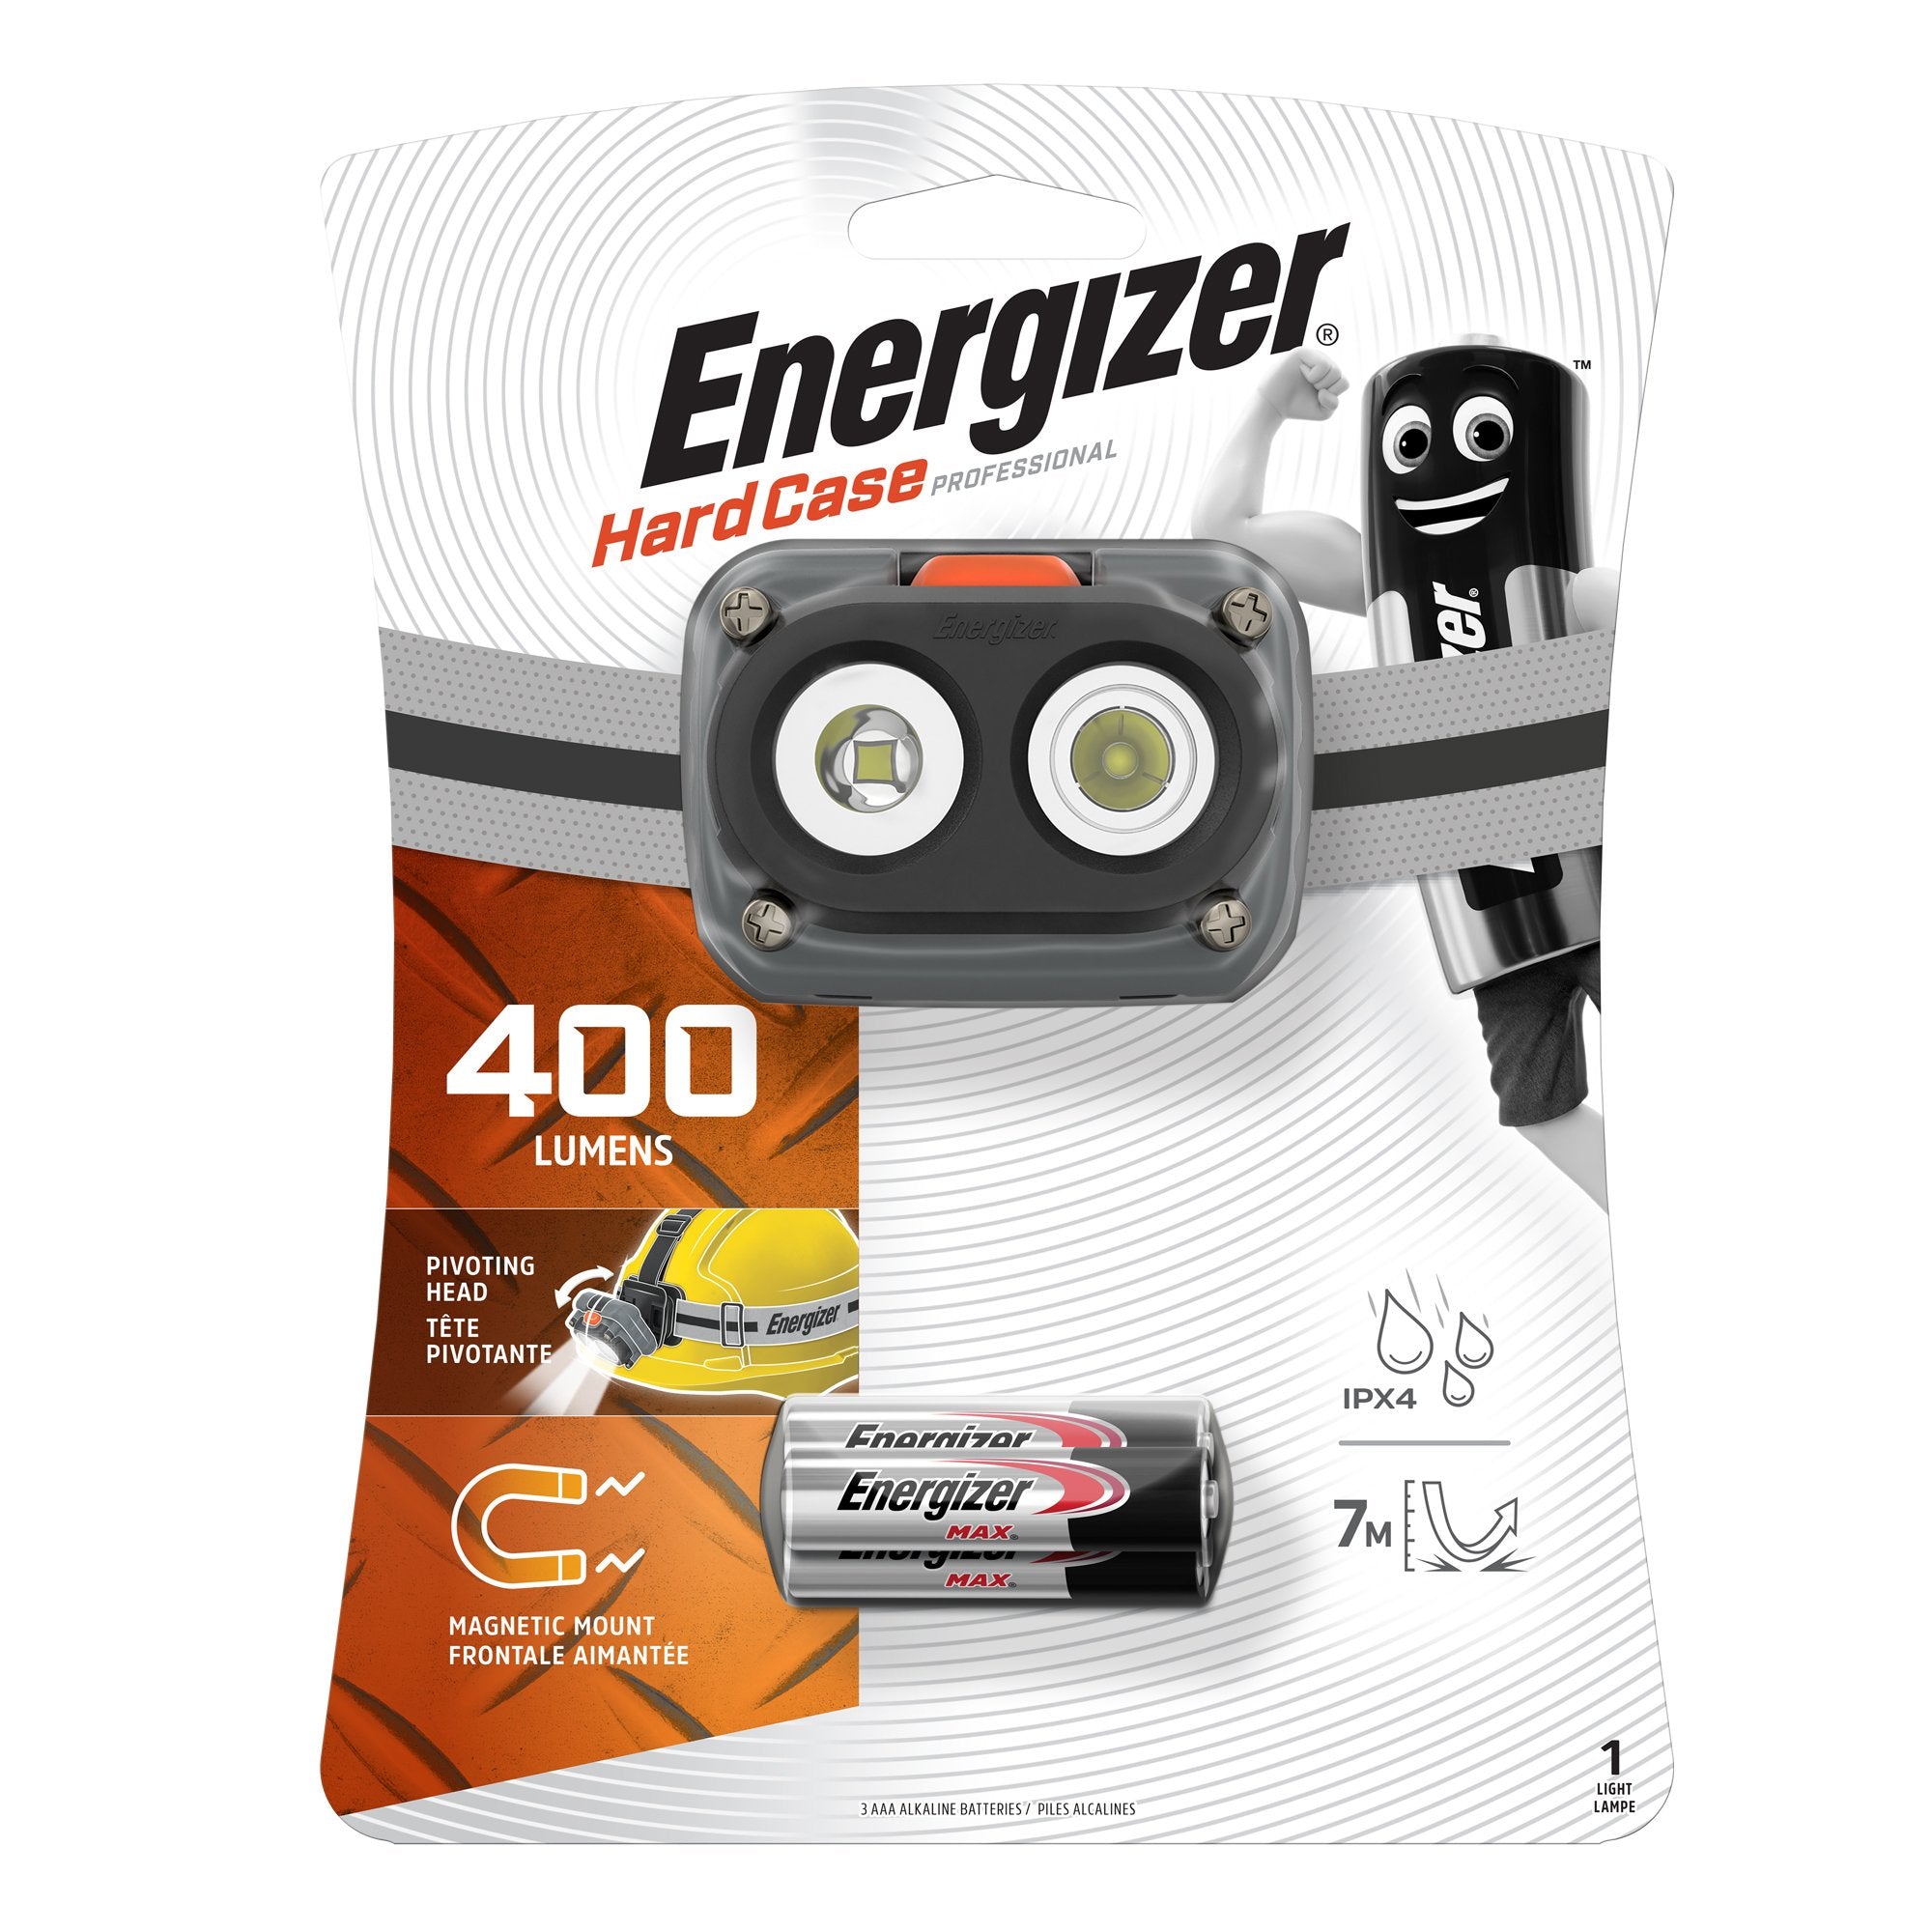 energizer-torcia-hardcase-professional-magnetic-headlight